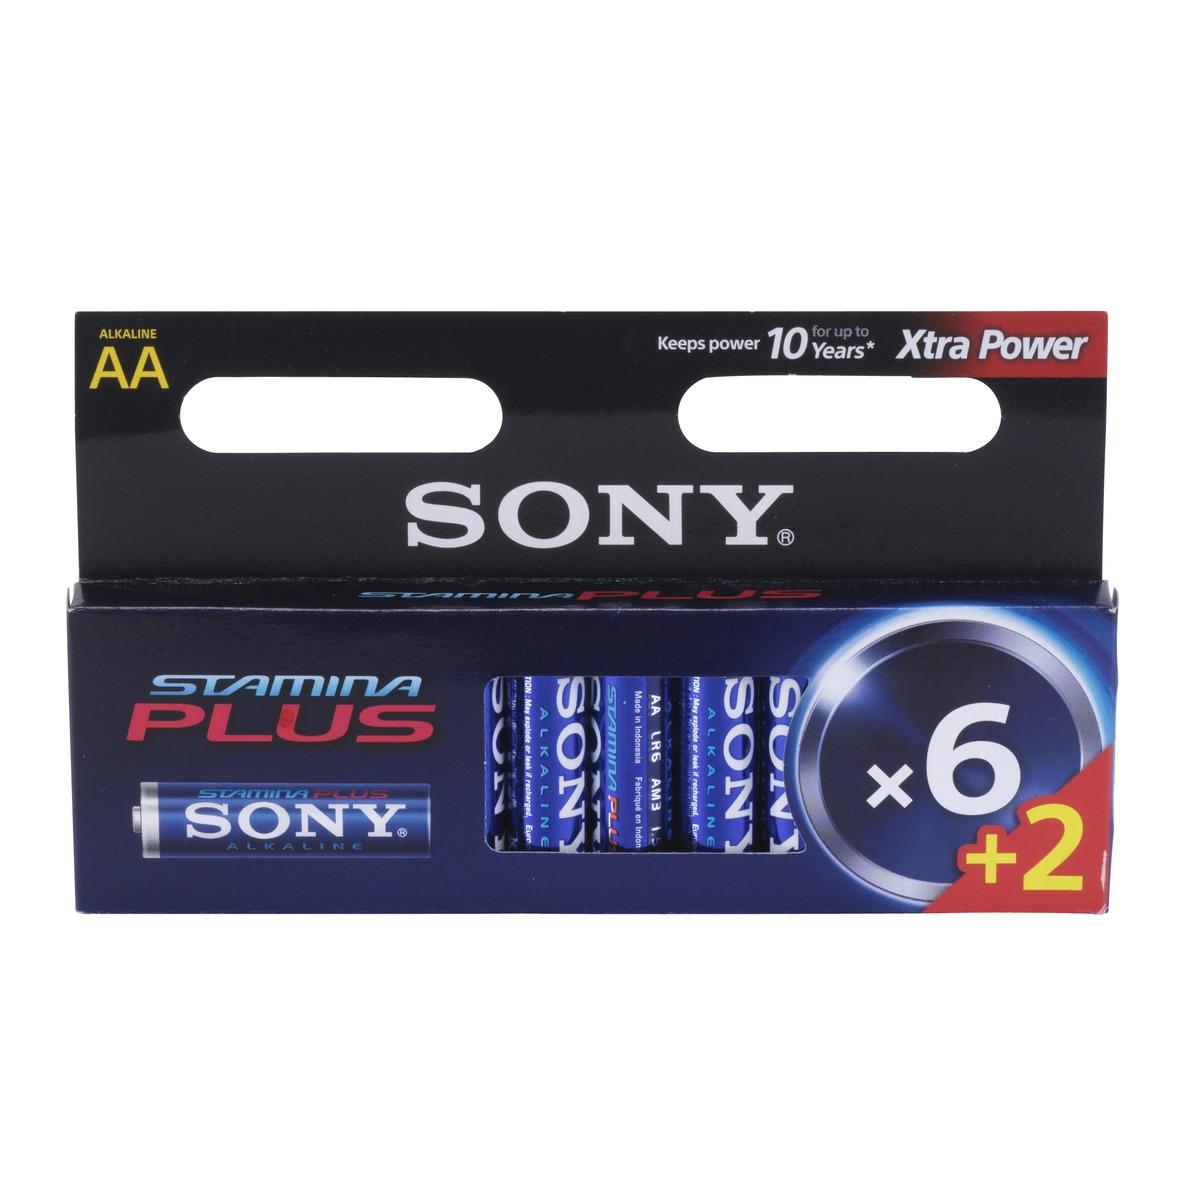 Lot de 6 piles Sony + 2 gratuites - AA LR6